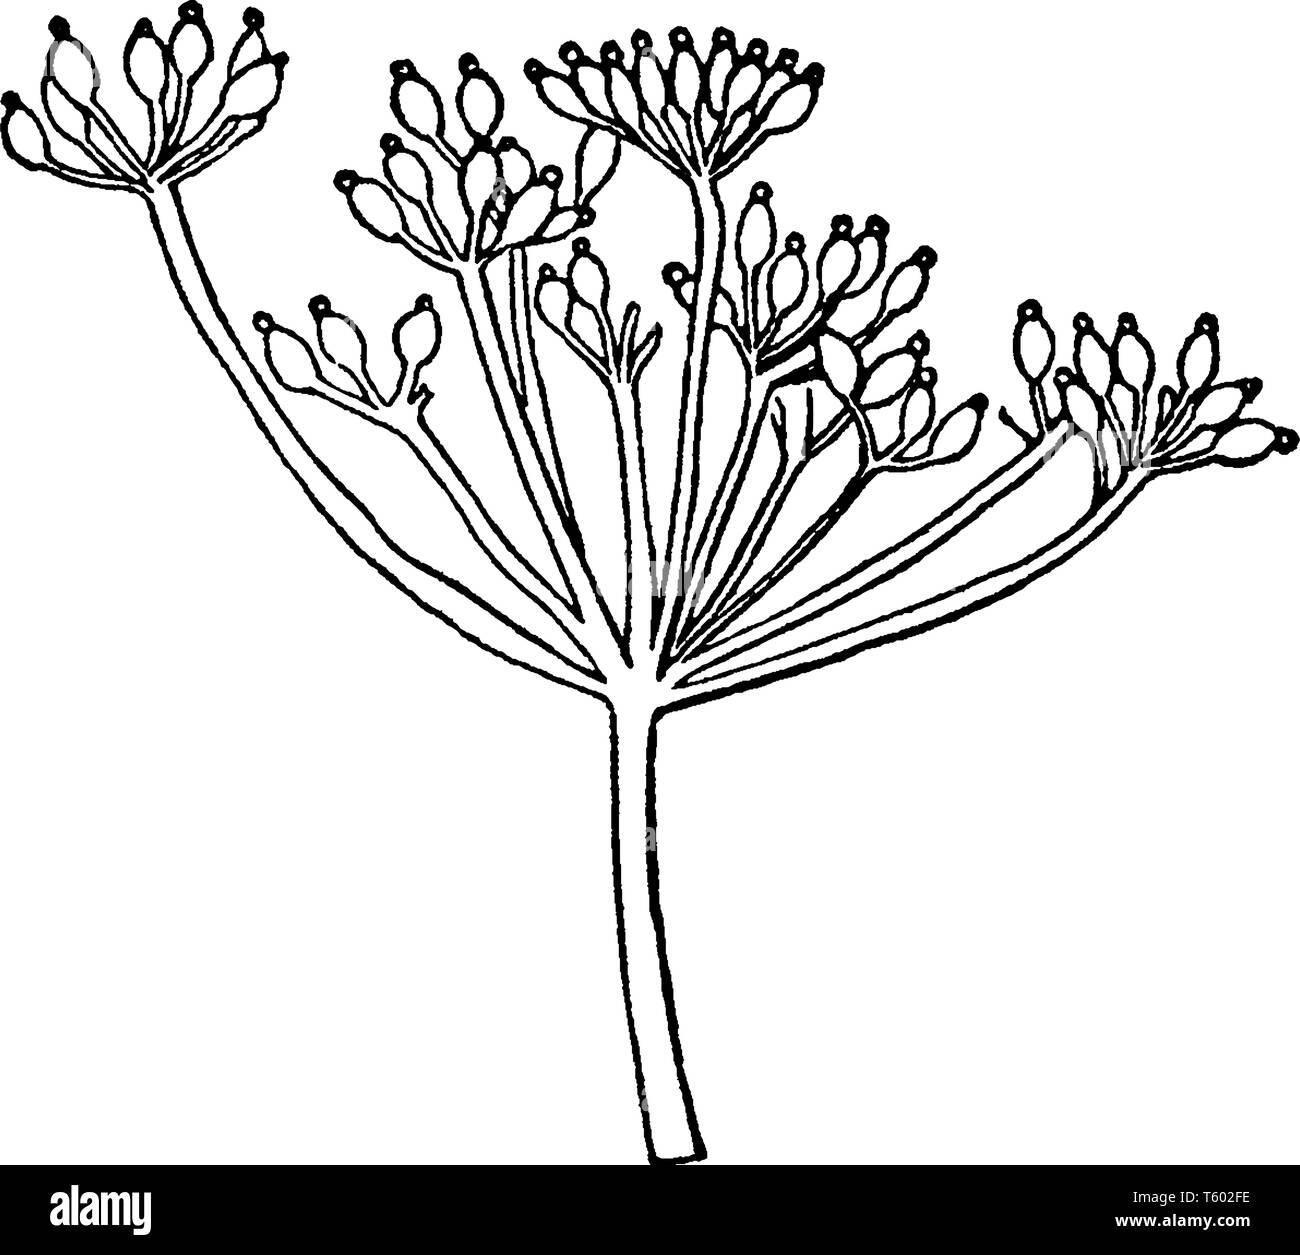 Ein Bild oder eine Grafik, die den dolde Anordnung der Blüten, die besteht aus einer Reihe von kurzen Blütenstiele, die von einem gemeinsamen Punkt verteilt, Stock Vektor